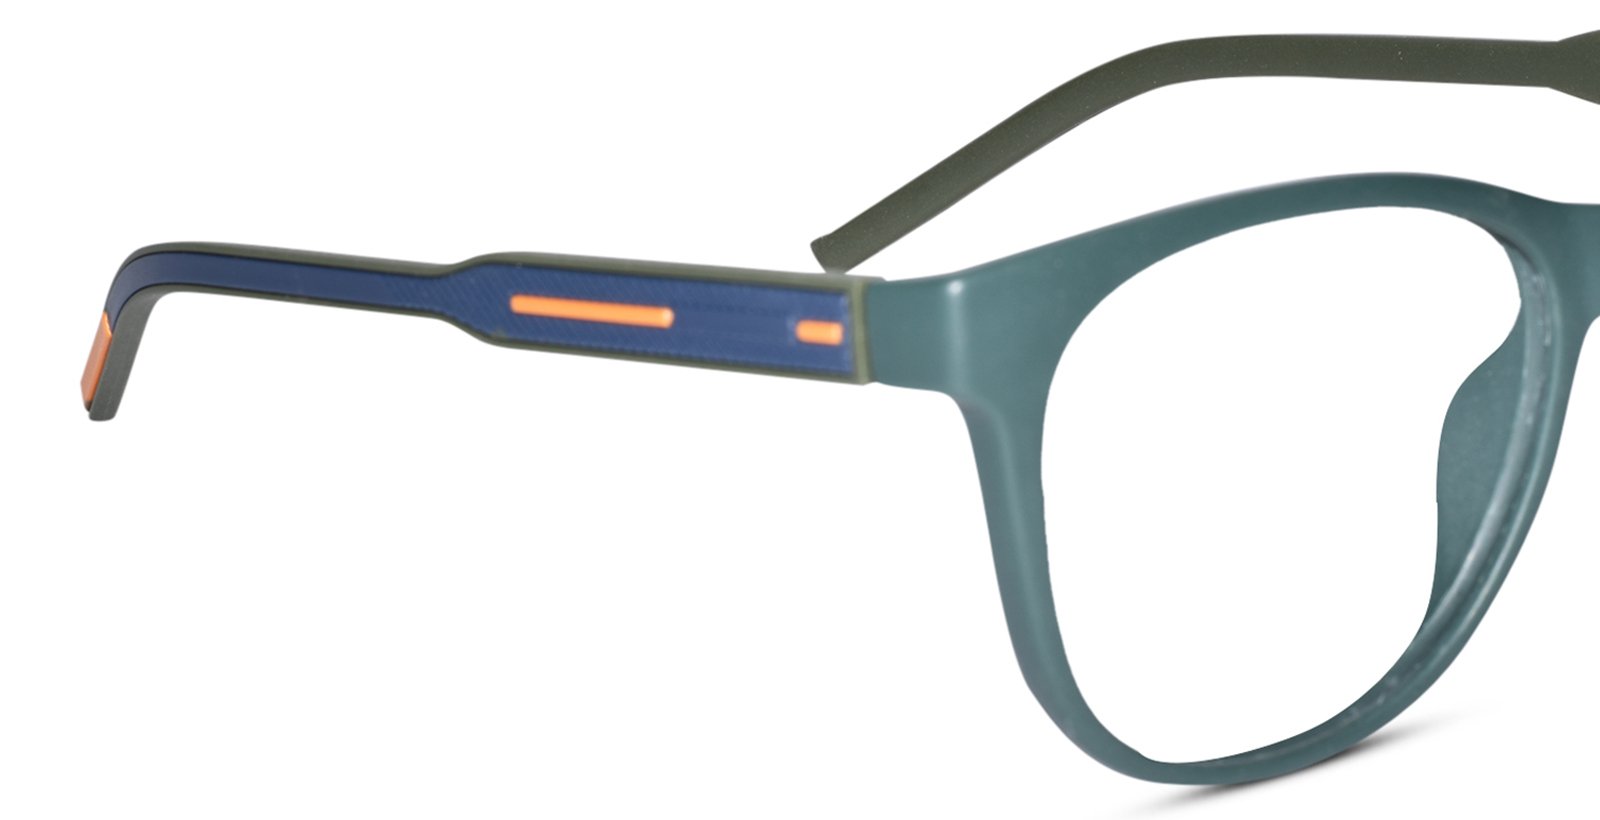 Wayfarer Shape Green Eyeglasses for Men & Women